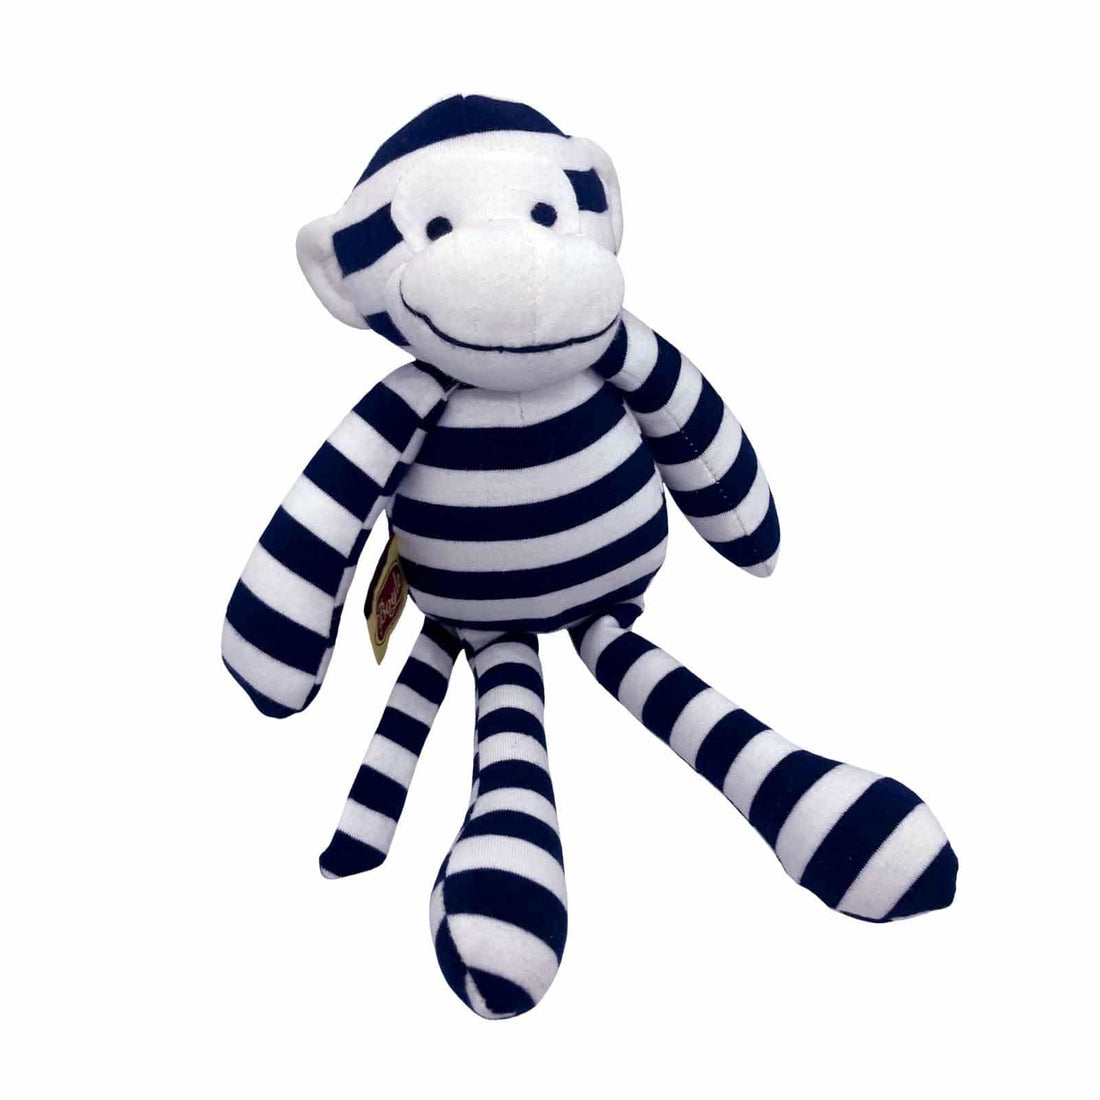 32cm Blue Striped Monkey Plush Toy